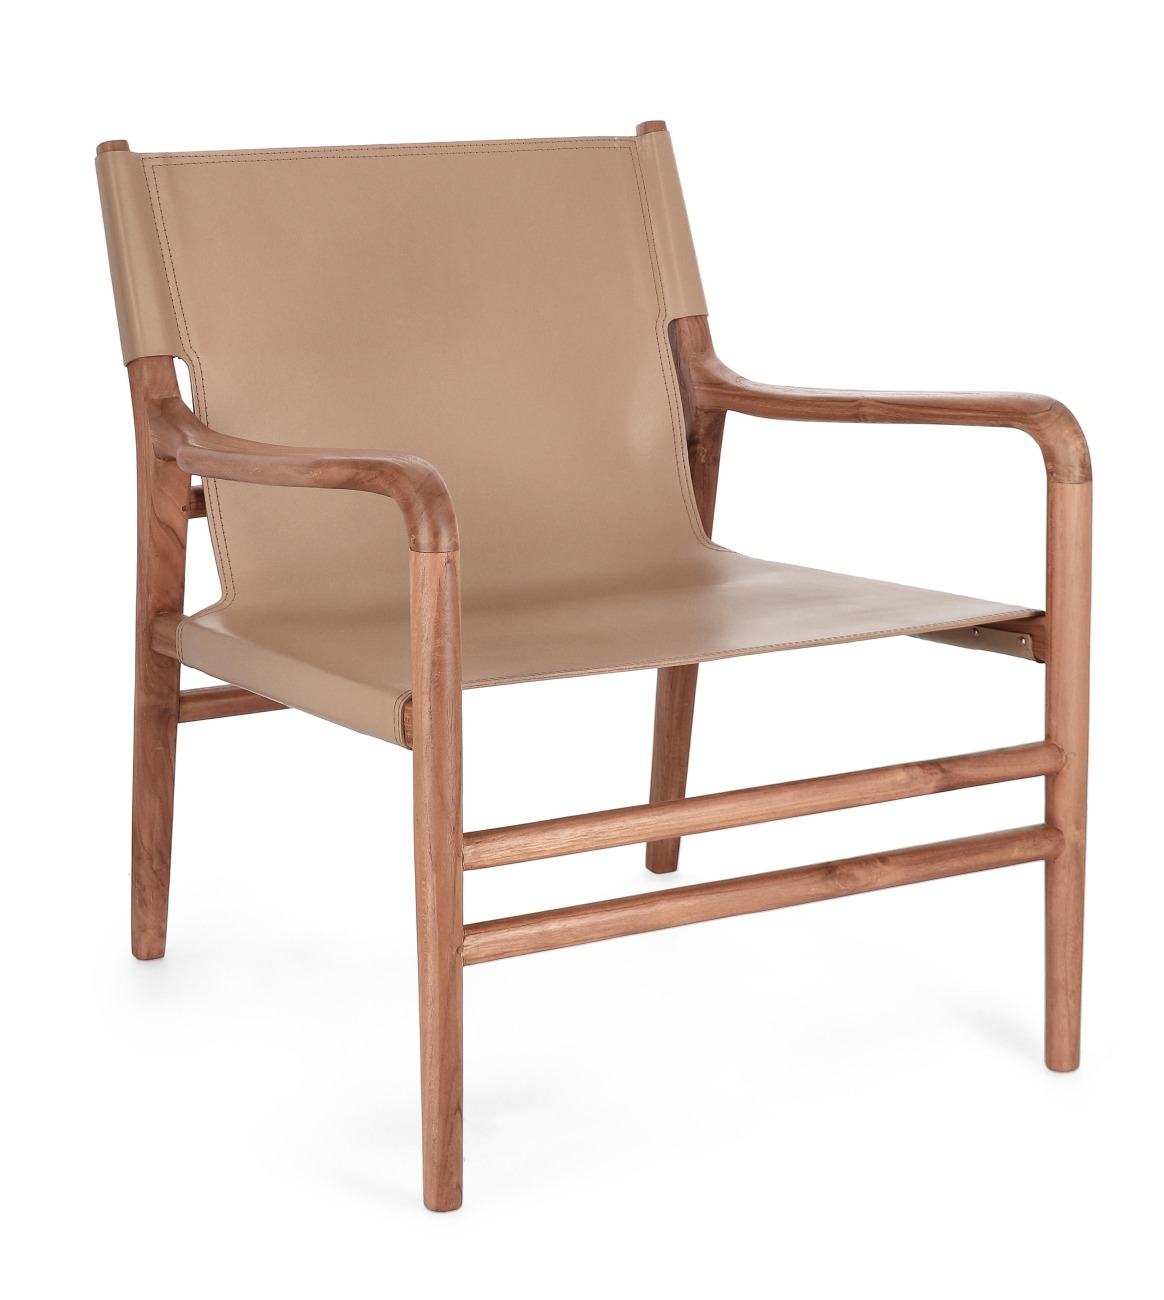 Der Sessel Caroline überzeugt mit seinem modernen Stil. Gefertigt wurde er aus Leder, welches einen Taupe Farbton besitzt. Das Gestell ist aus Teakholz und hat eine natürliche Farbe. Der Sessel besitzt eine Sitzhöhe von 57 cm.